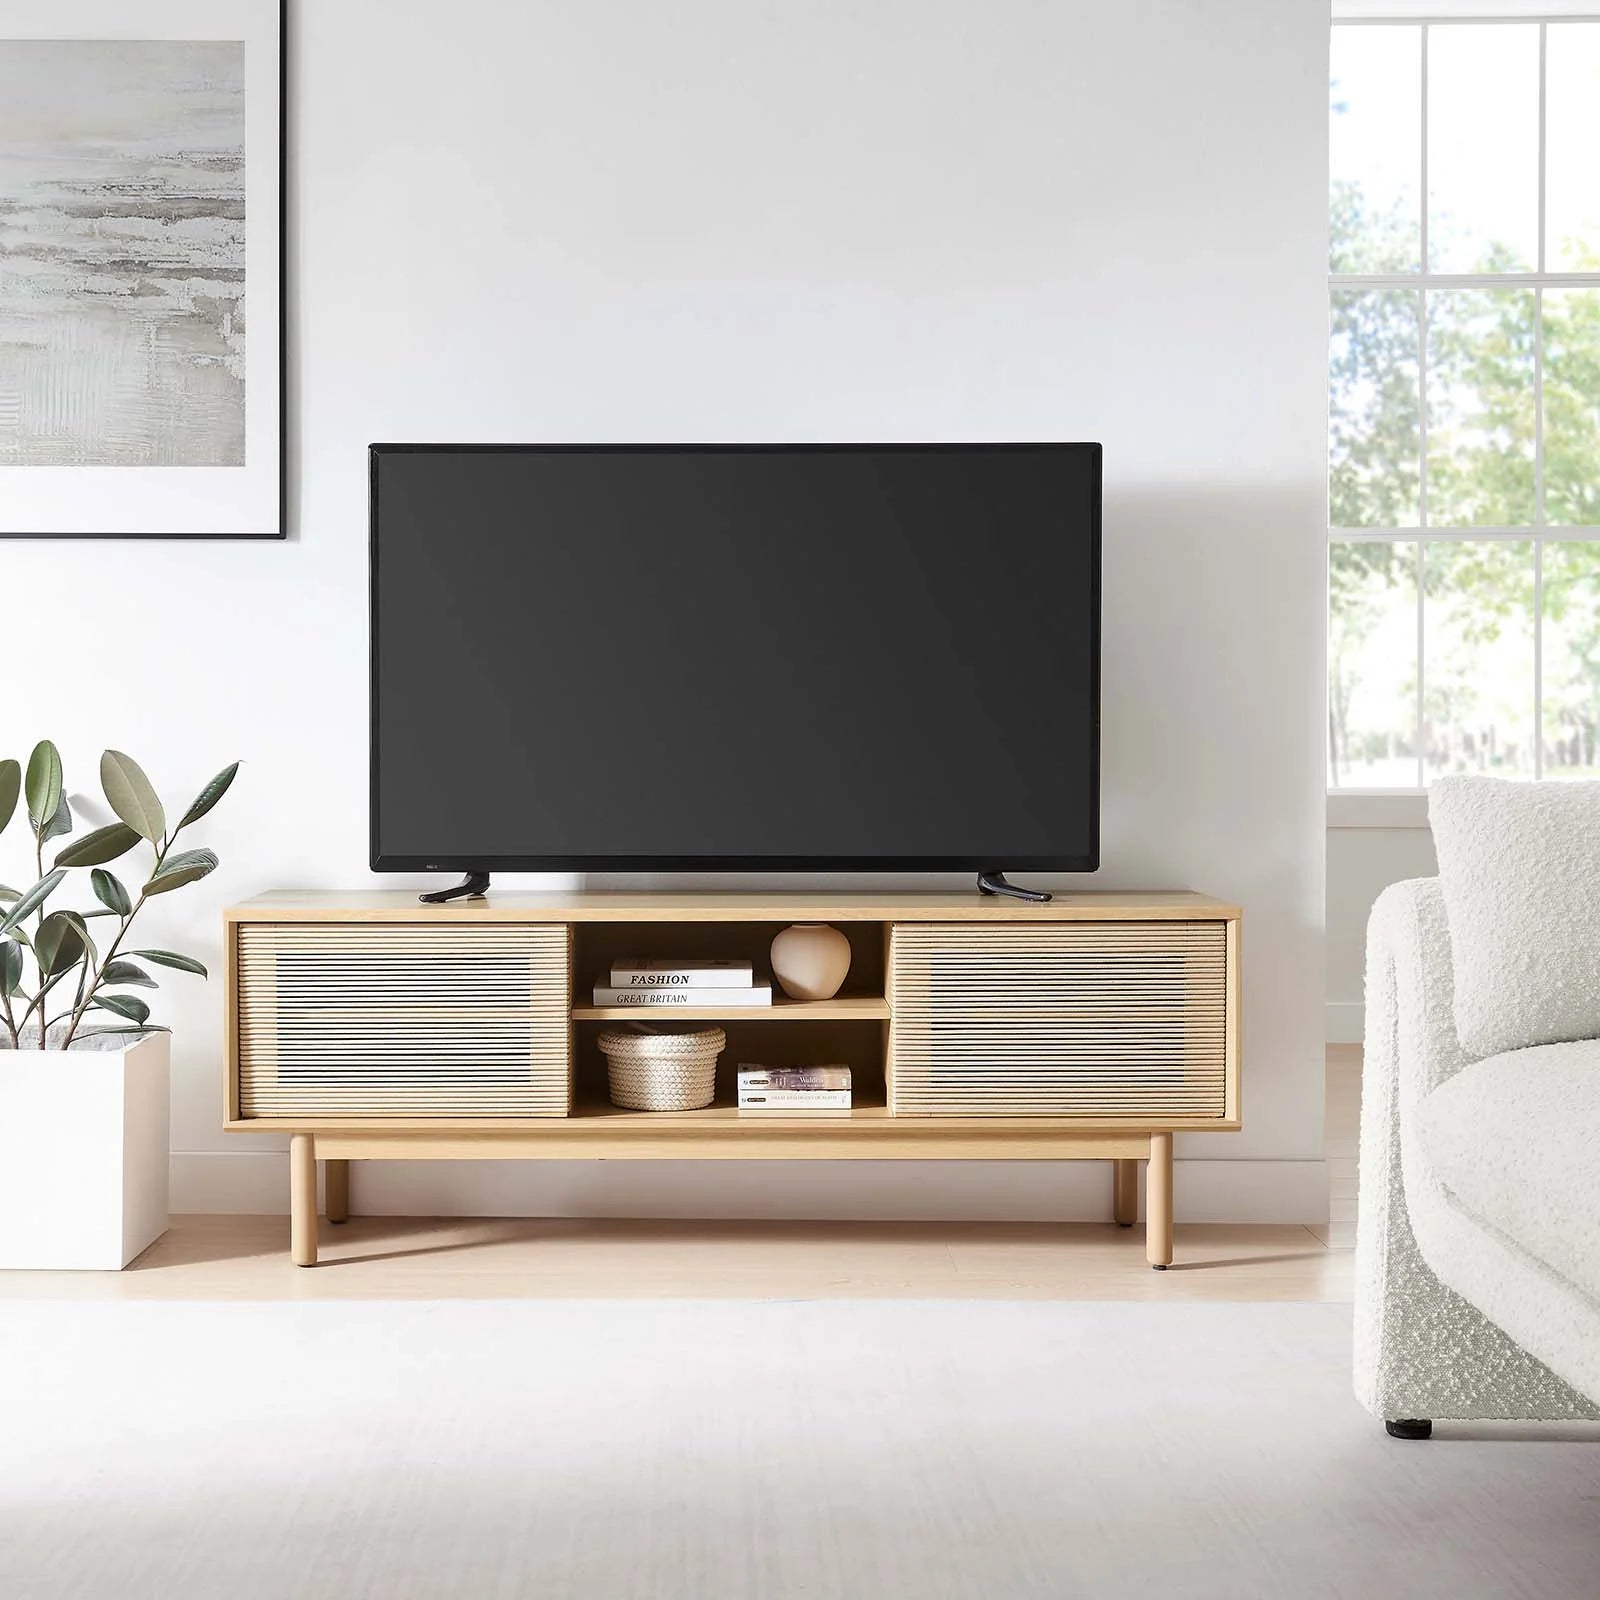 Mueble de 59” para TV con cuerda tejida Areu en una sala.